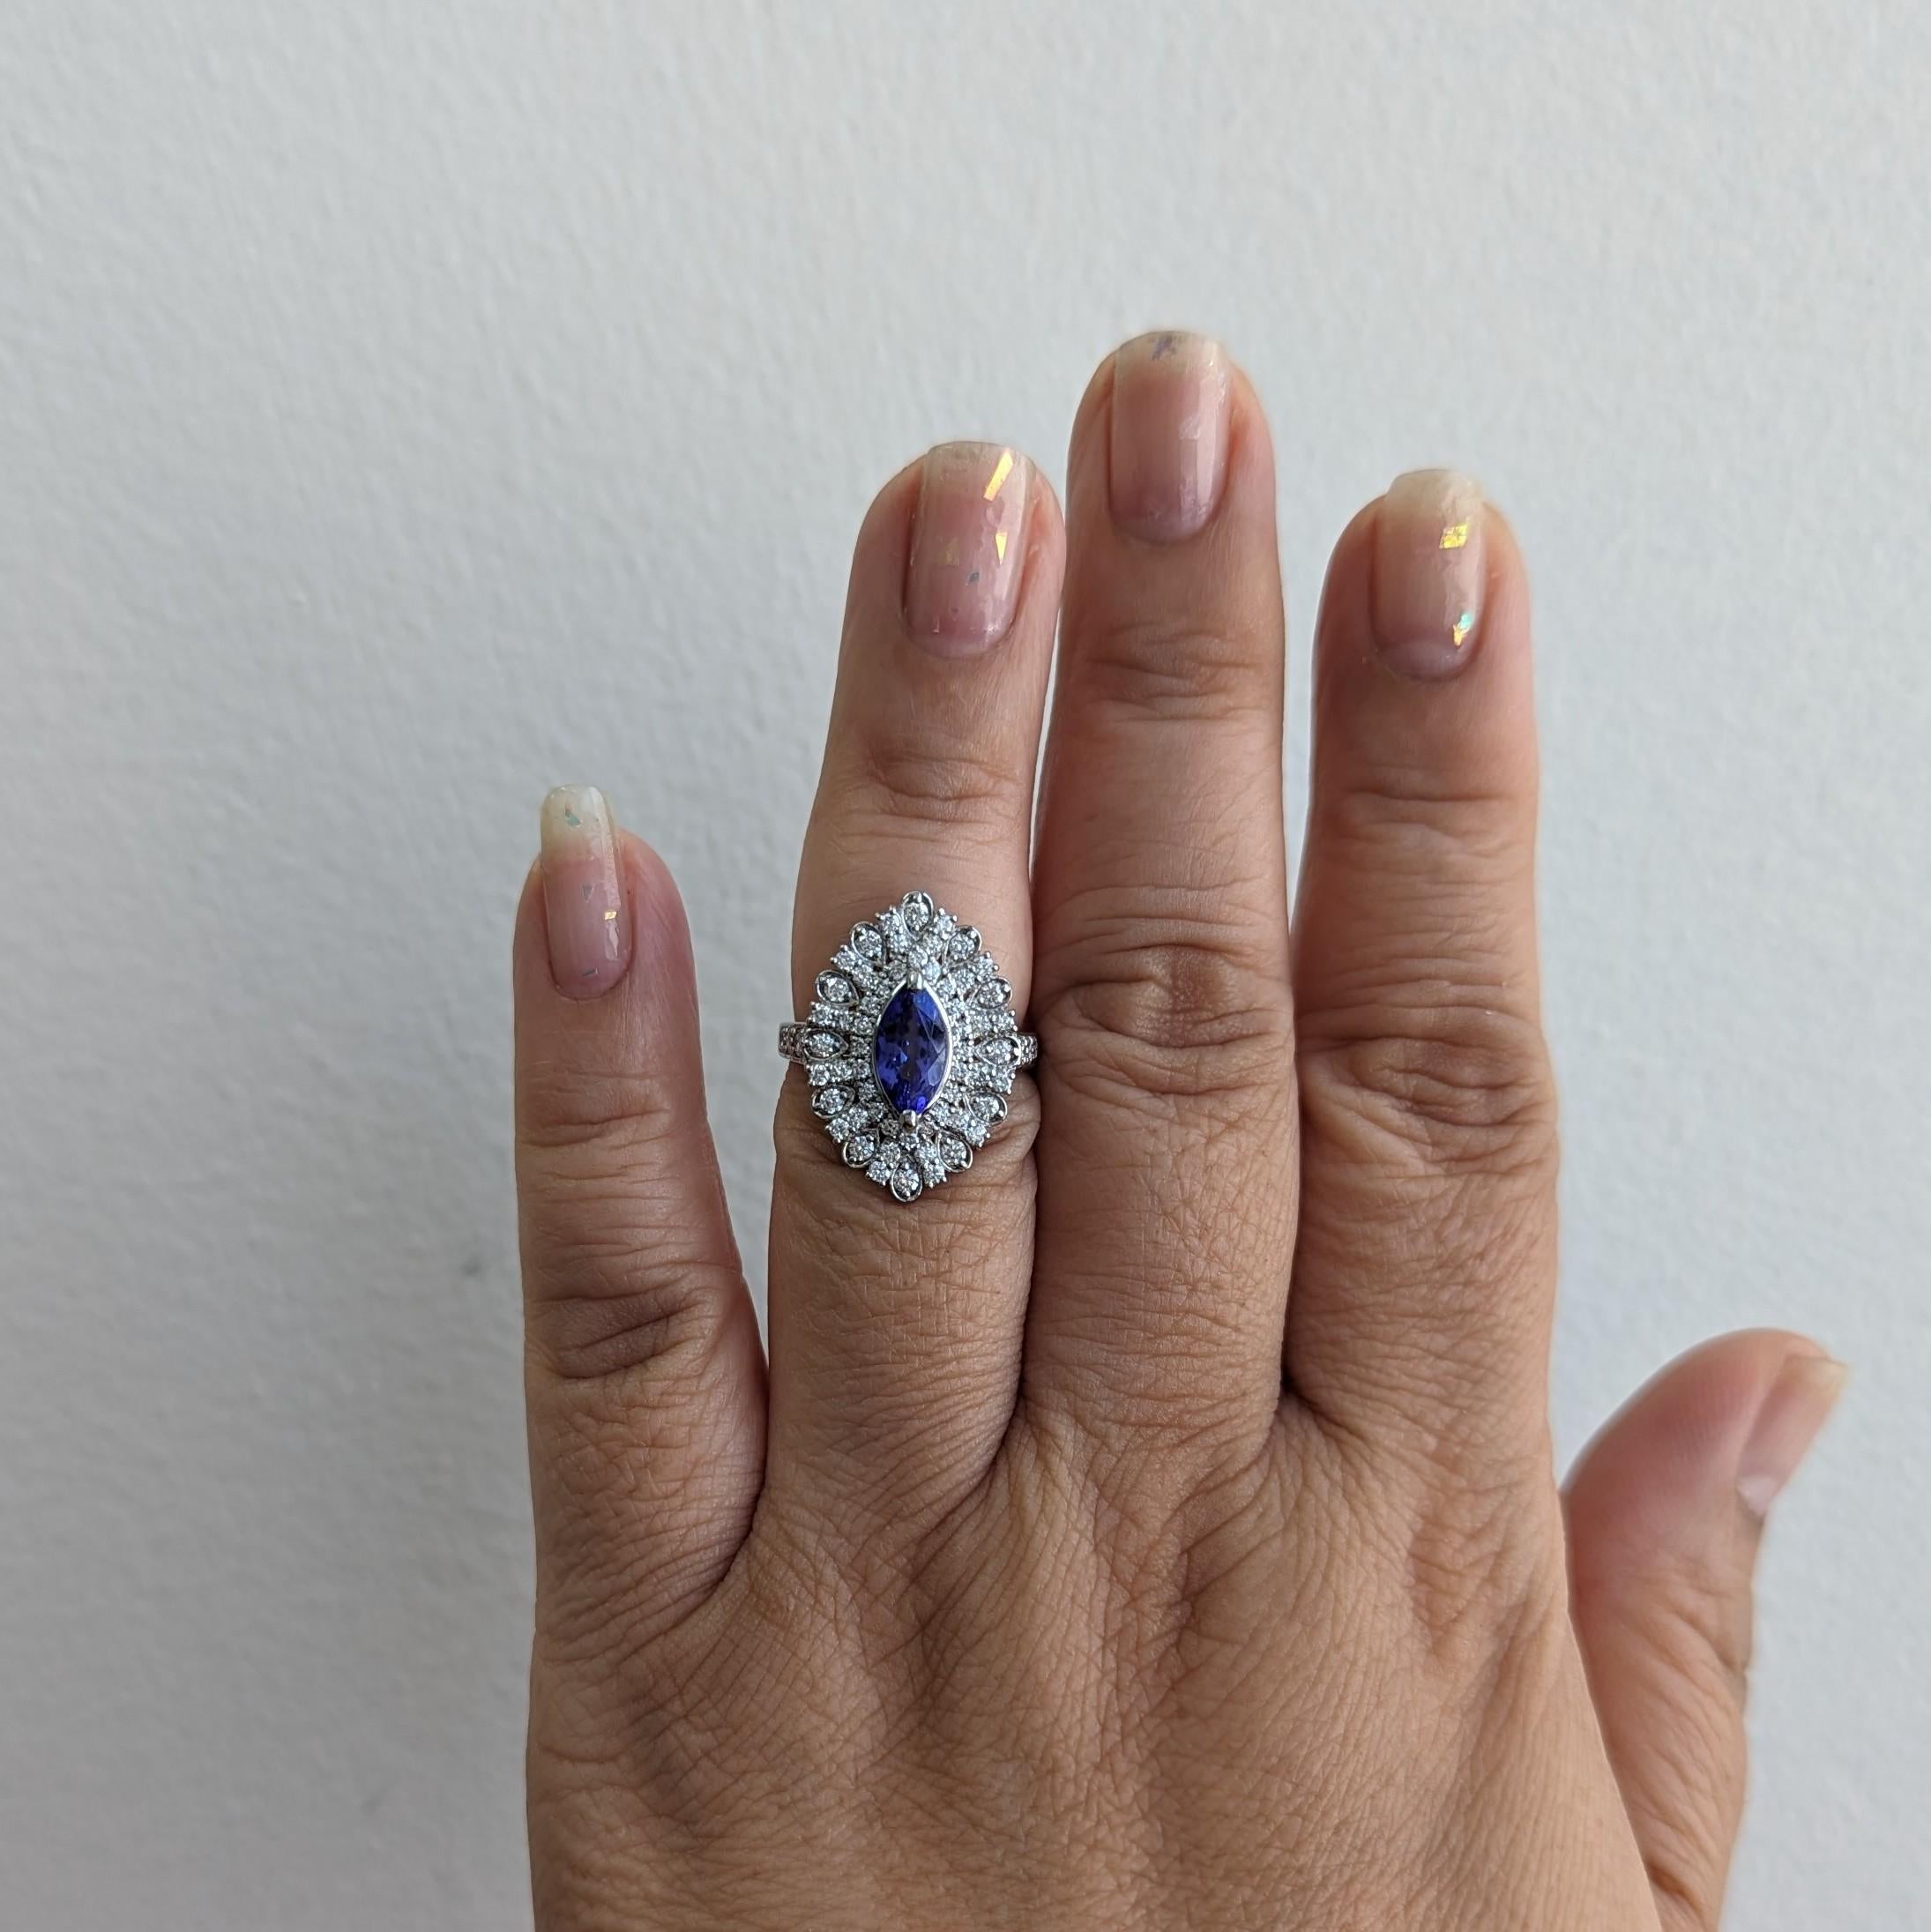 Wunderschöner 1,78 ct. Tansanit Marquise mit 0,87 ct. weißen Diamanten guter Qualität.  Handgefertigt in Platin.  Ringgröße 6,25.